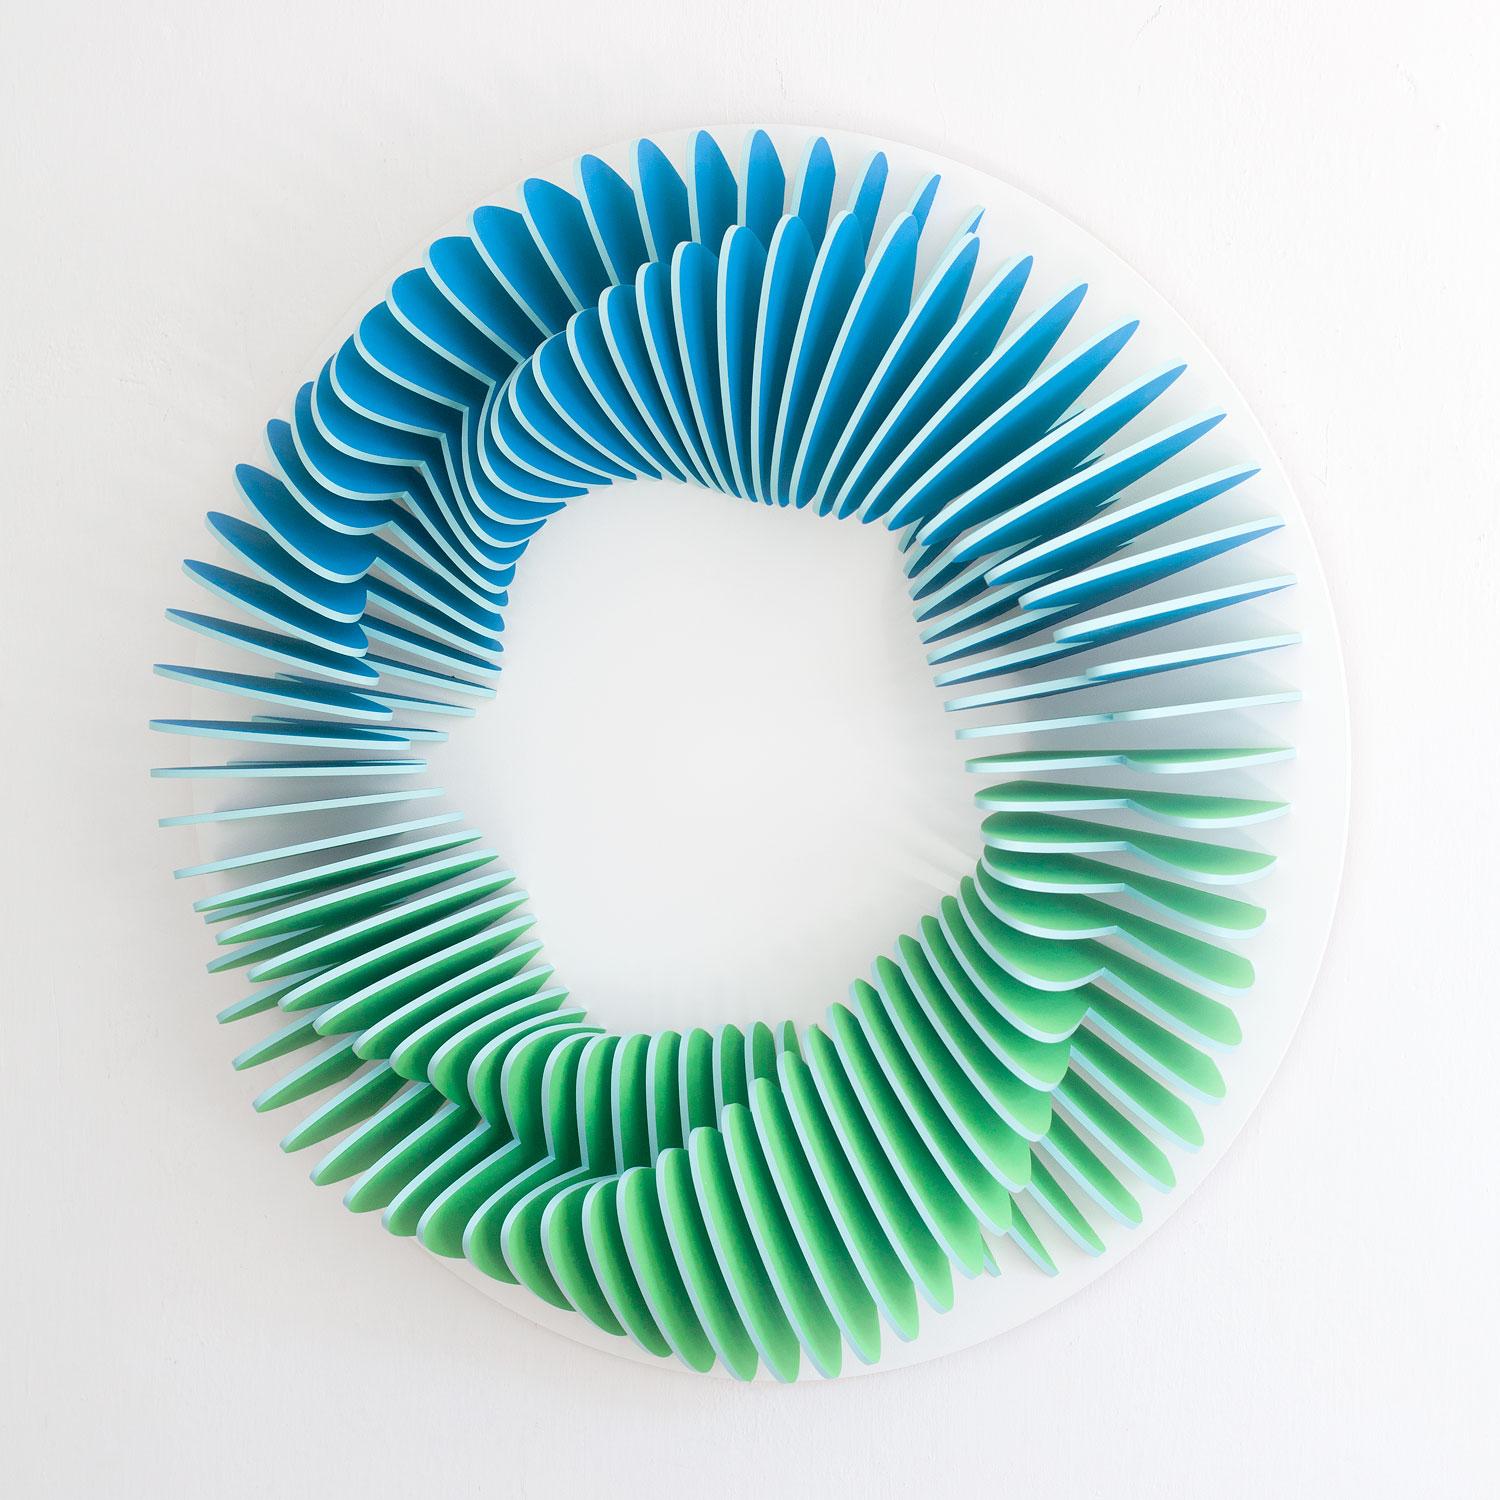 CC 102 - Sculpture murale circulaire géométrique abstraite en 3D bleu vert